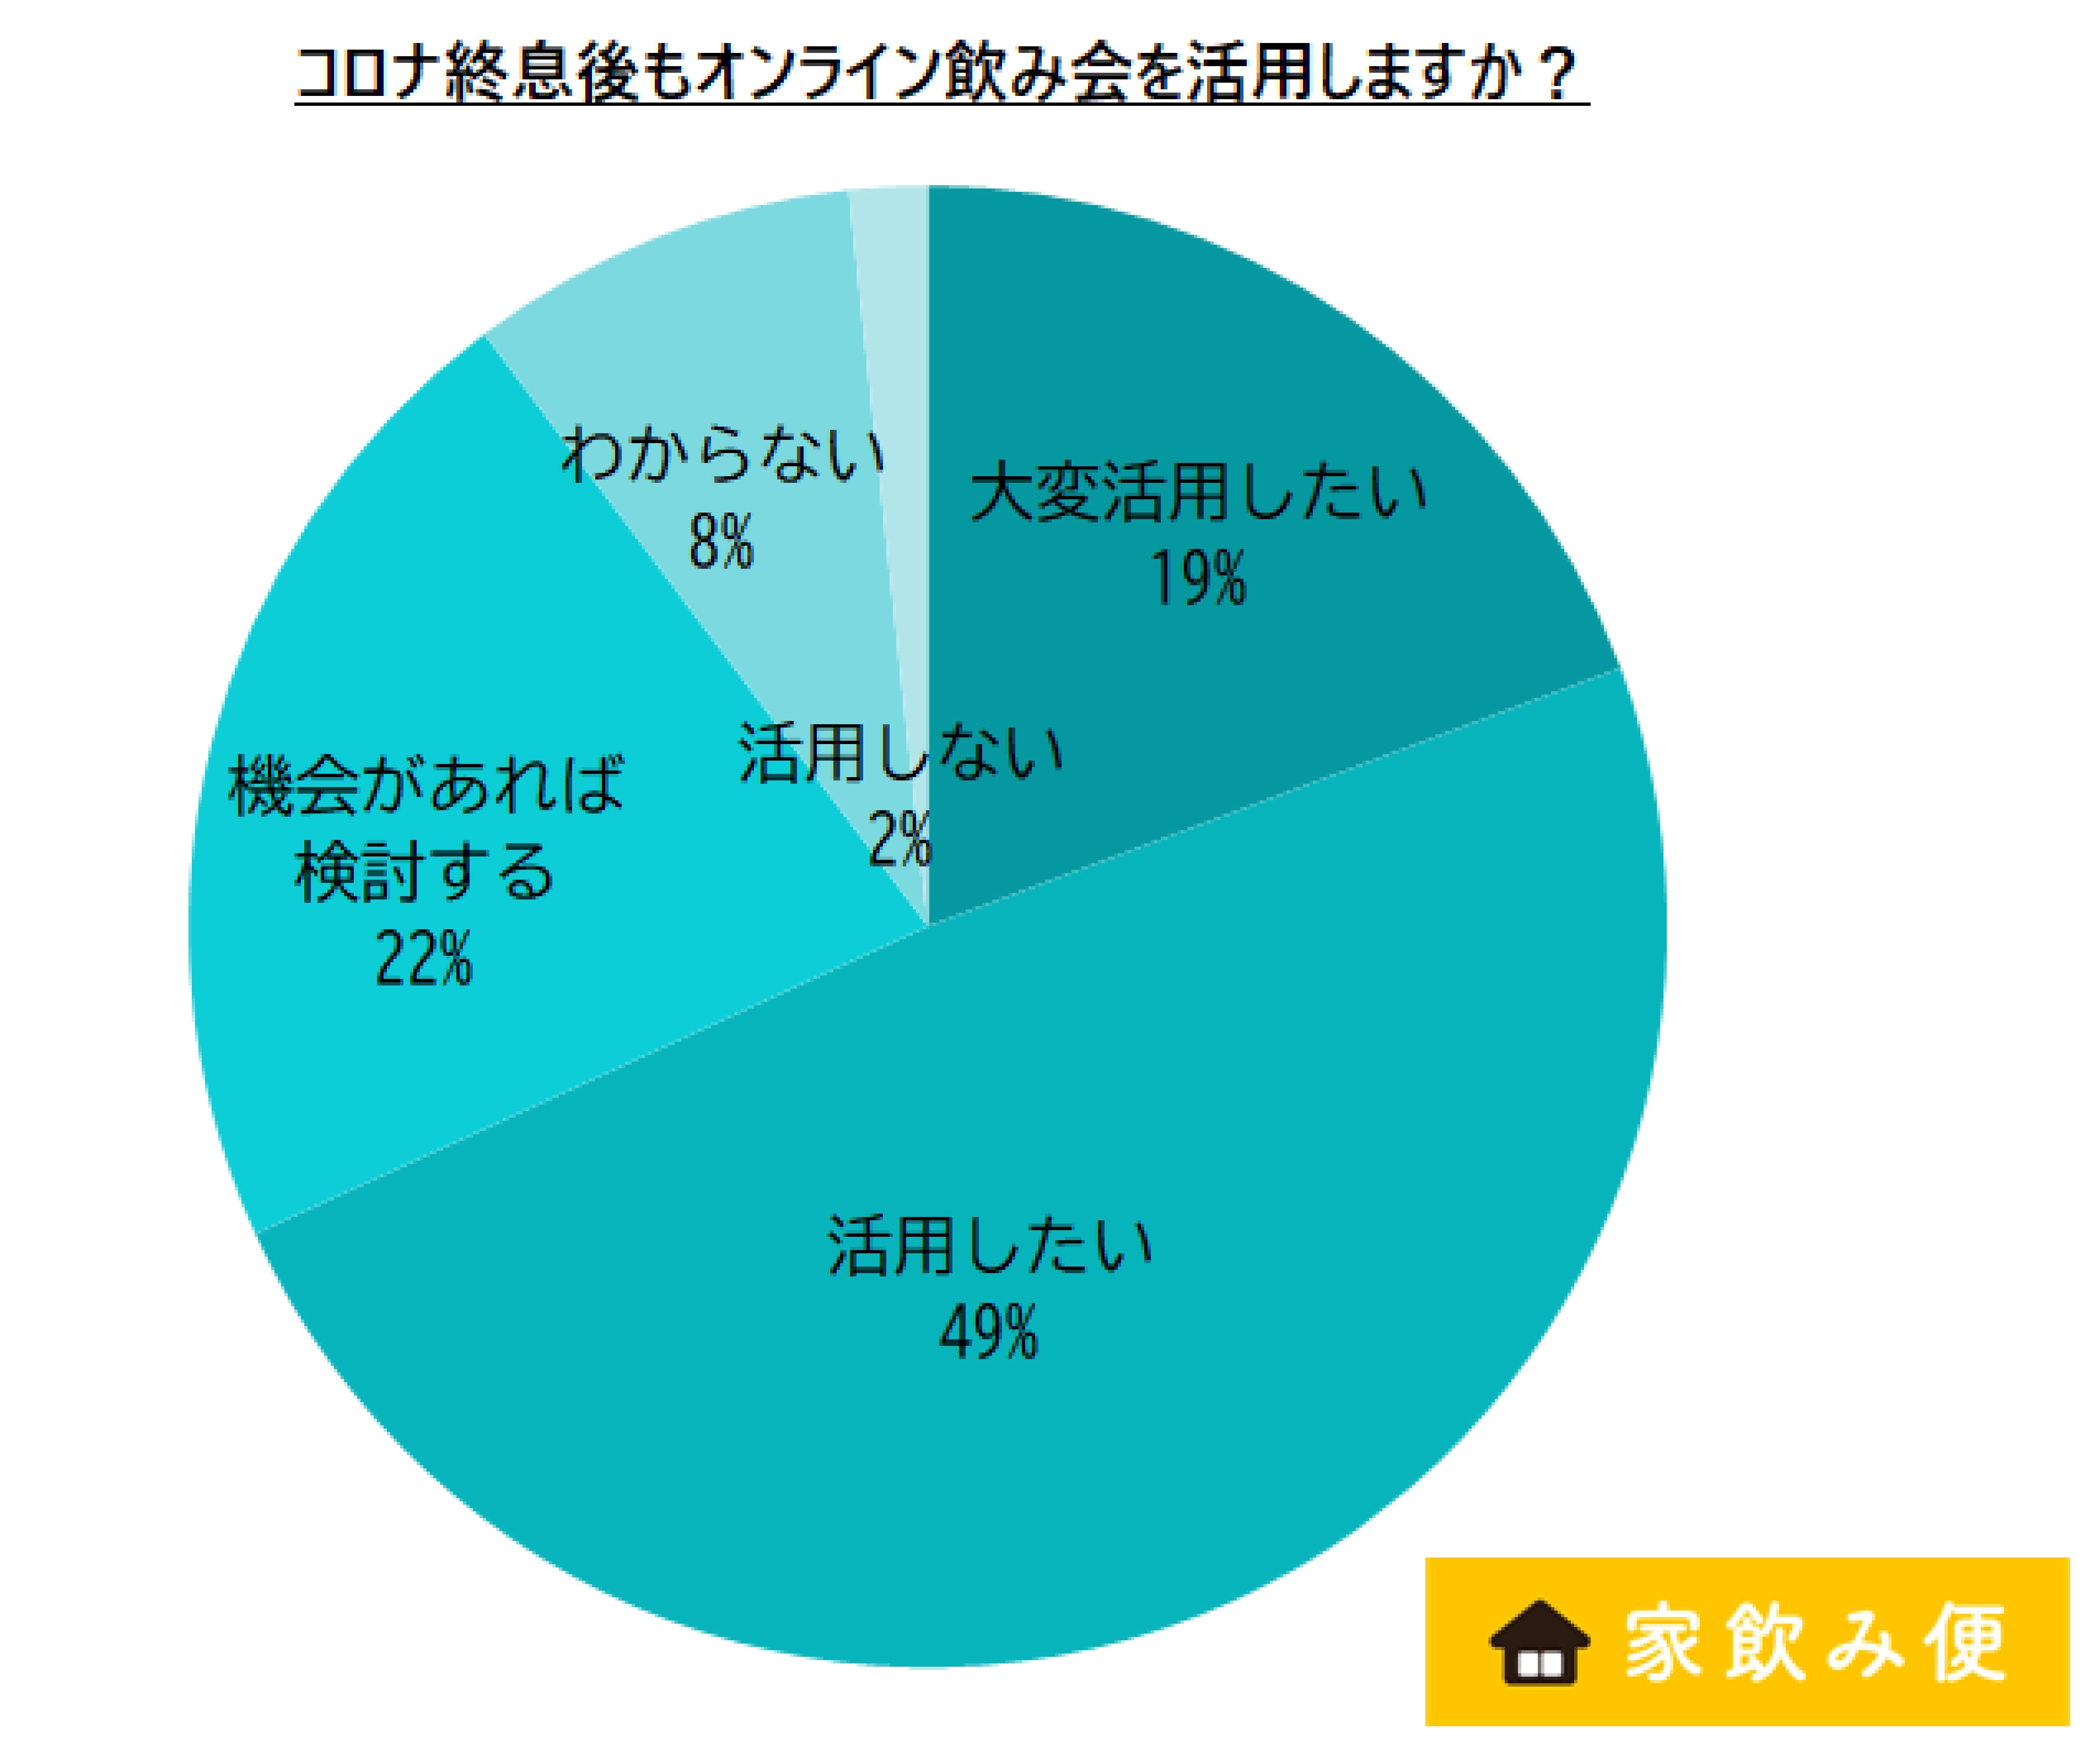  _401_http://www.apcompany.jp/news/2021/05/06/1%E6%B4%BB%E7%94%A8%E3%81%99%E3%82%8B%E3%81%8B%E3%81%A9%E3%81%86%E3%81%8B.jpg